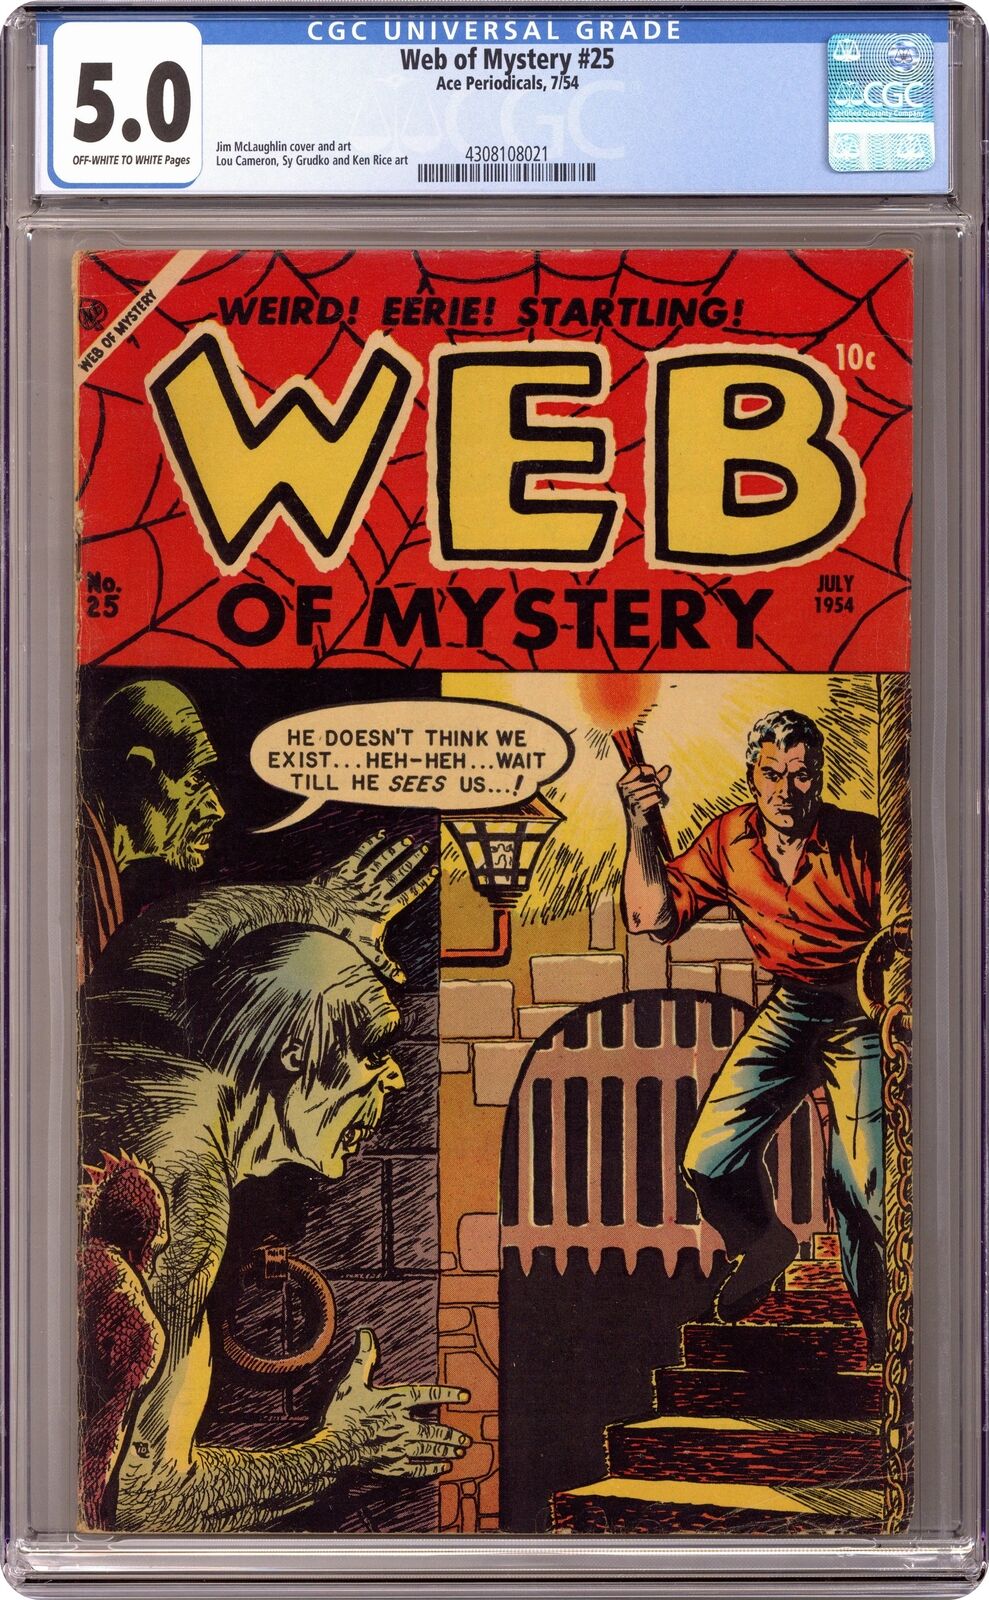 Web of Mystery #25 CGC 5.0 1954 4308108021